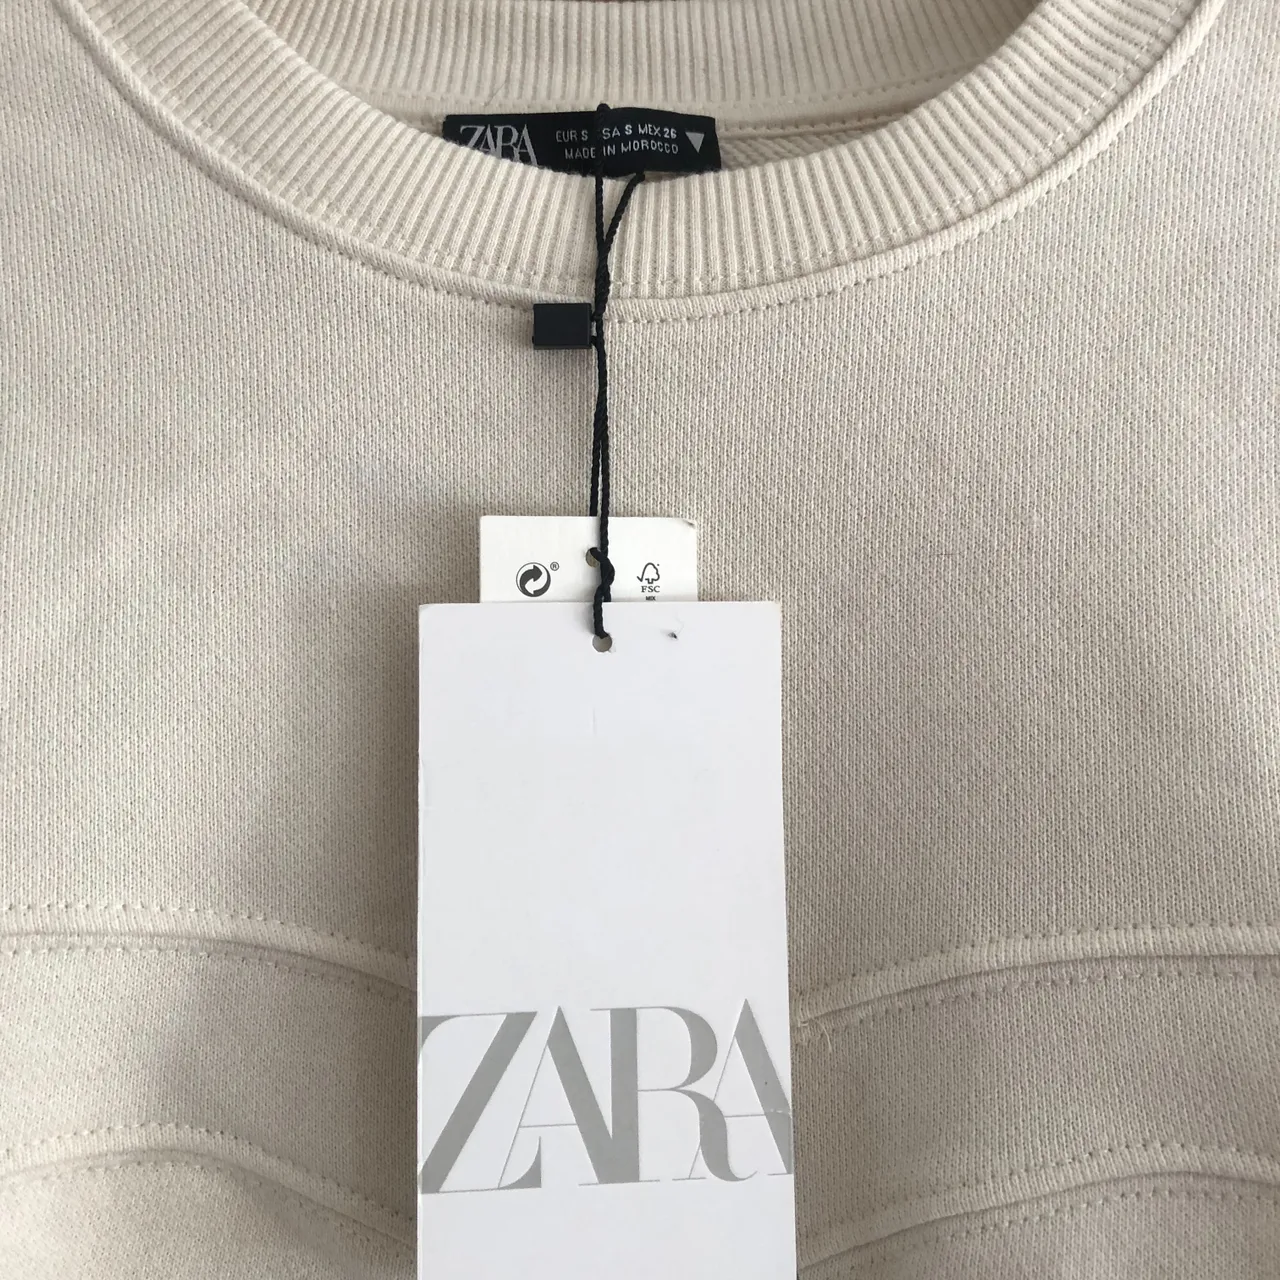 Brand new Zara sweatshirt photo 3